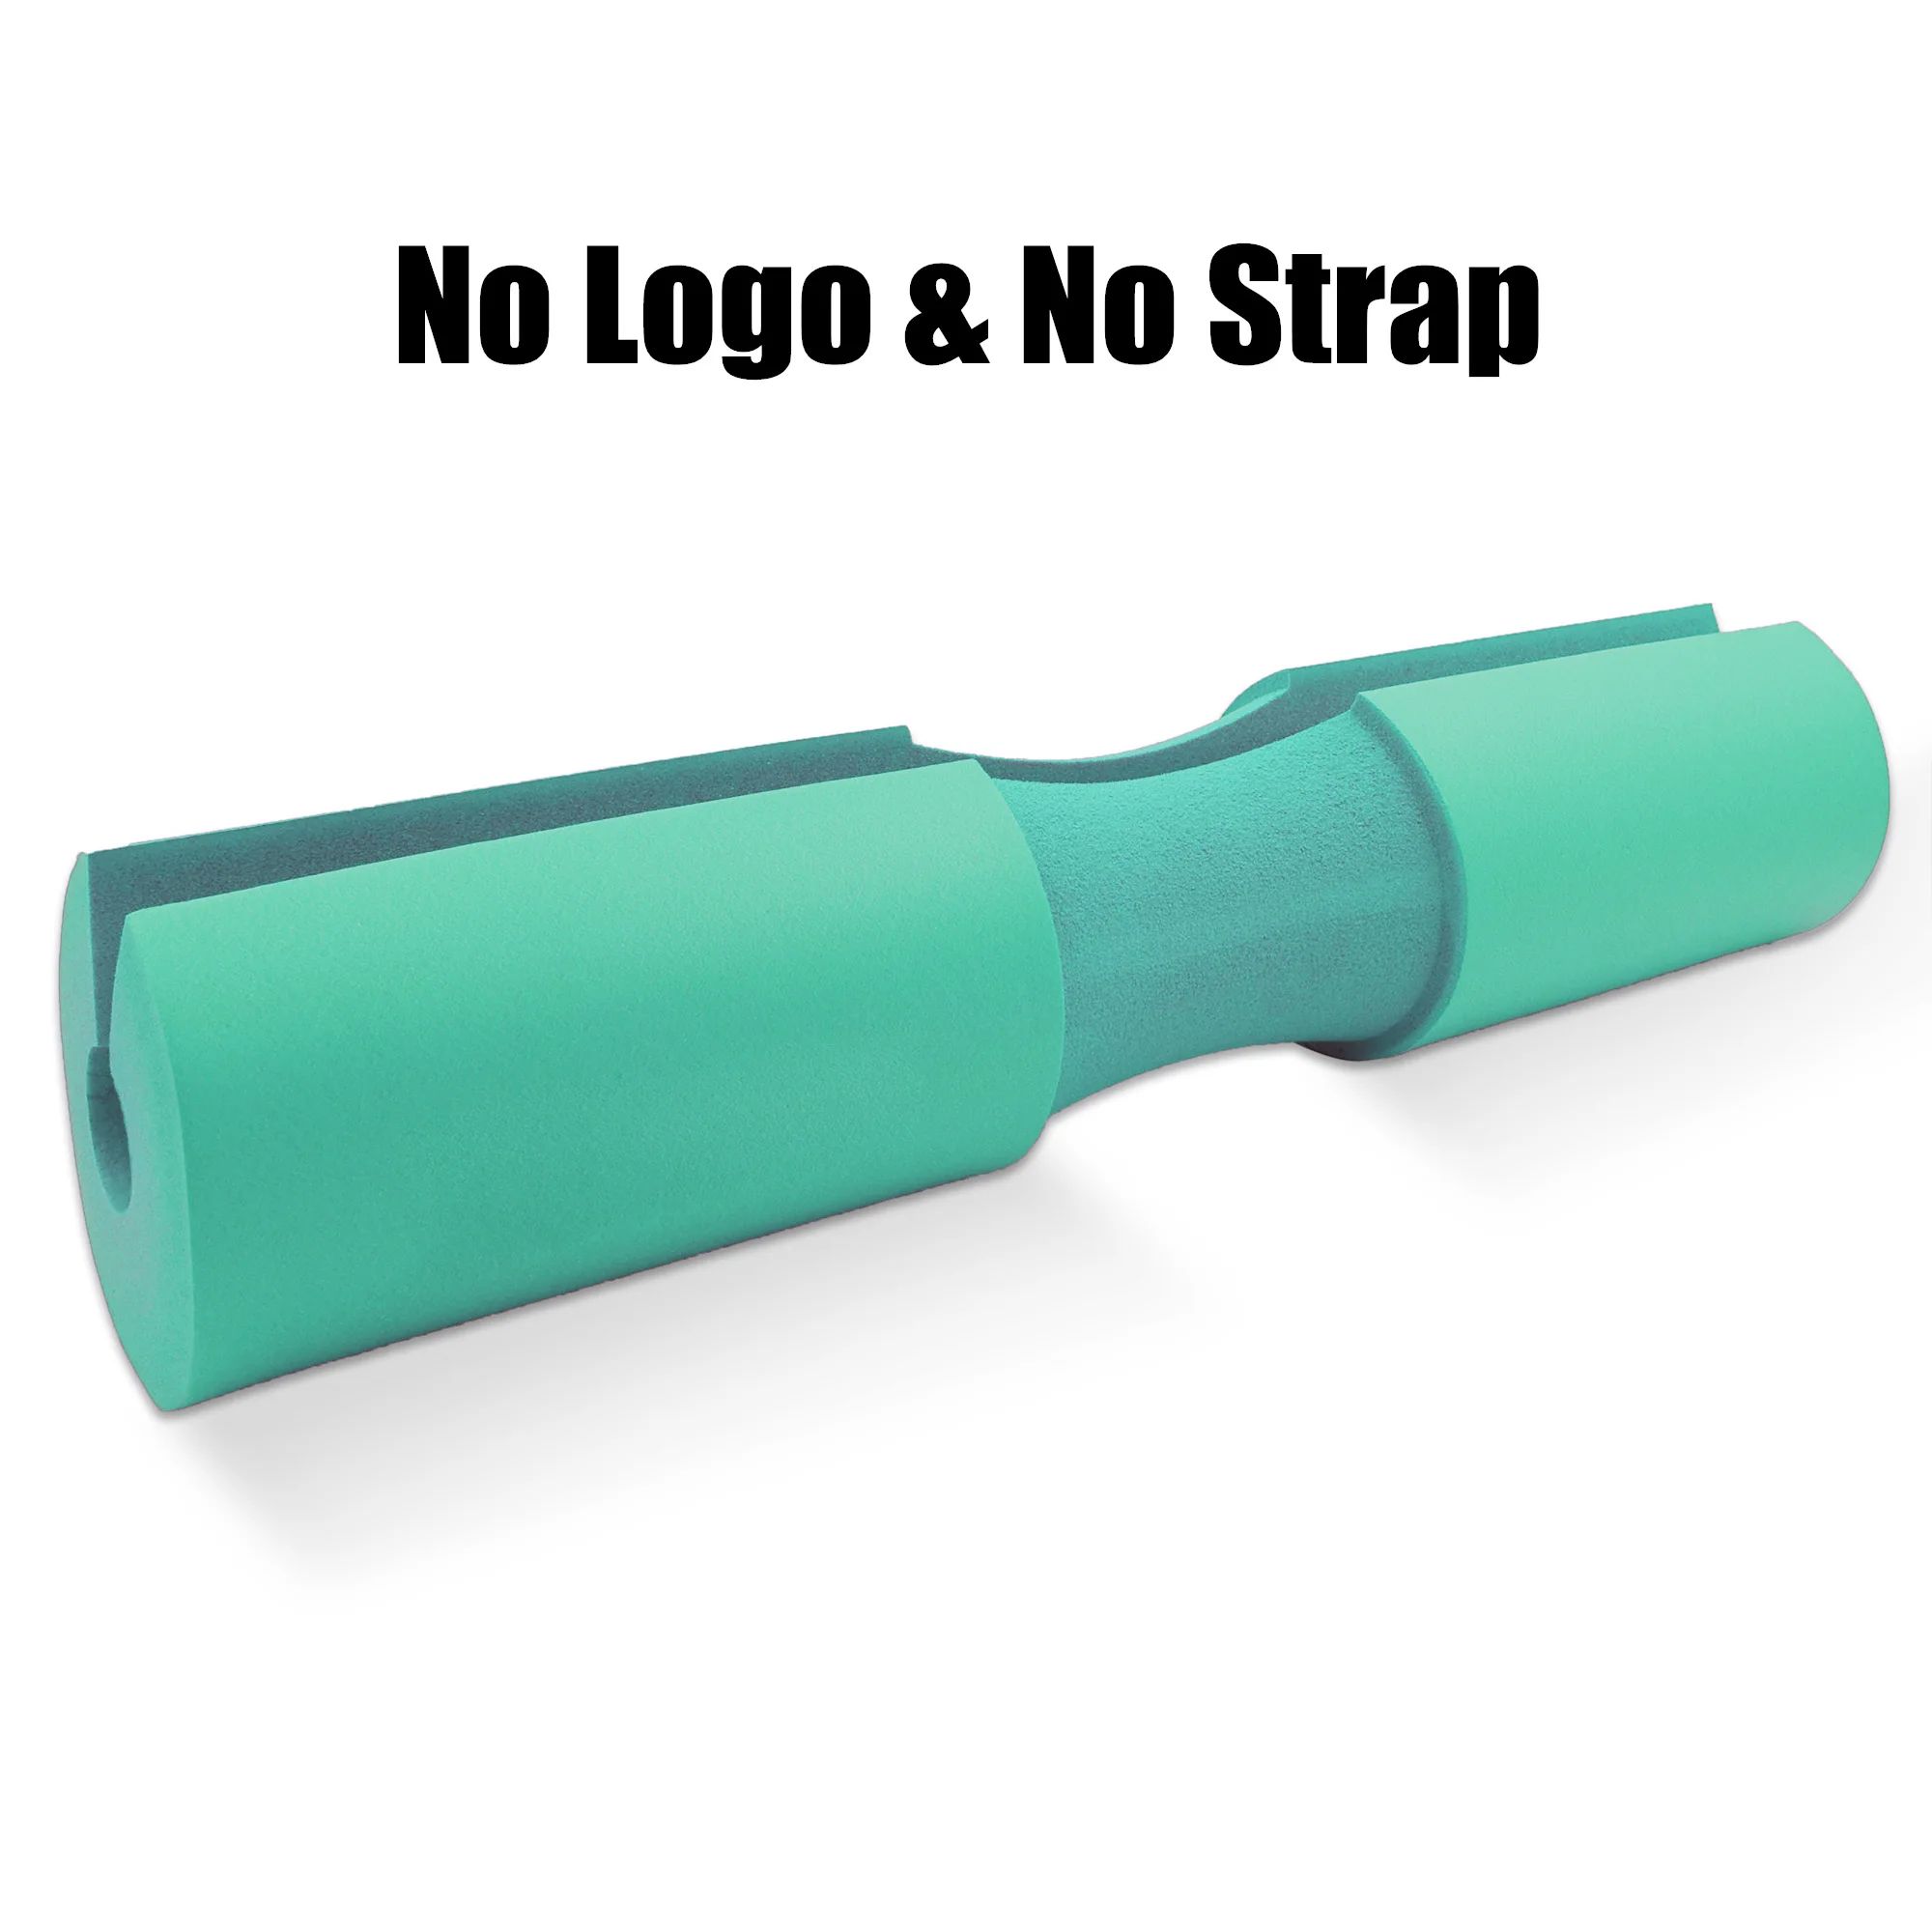 Color:No logo or strap